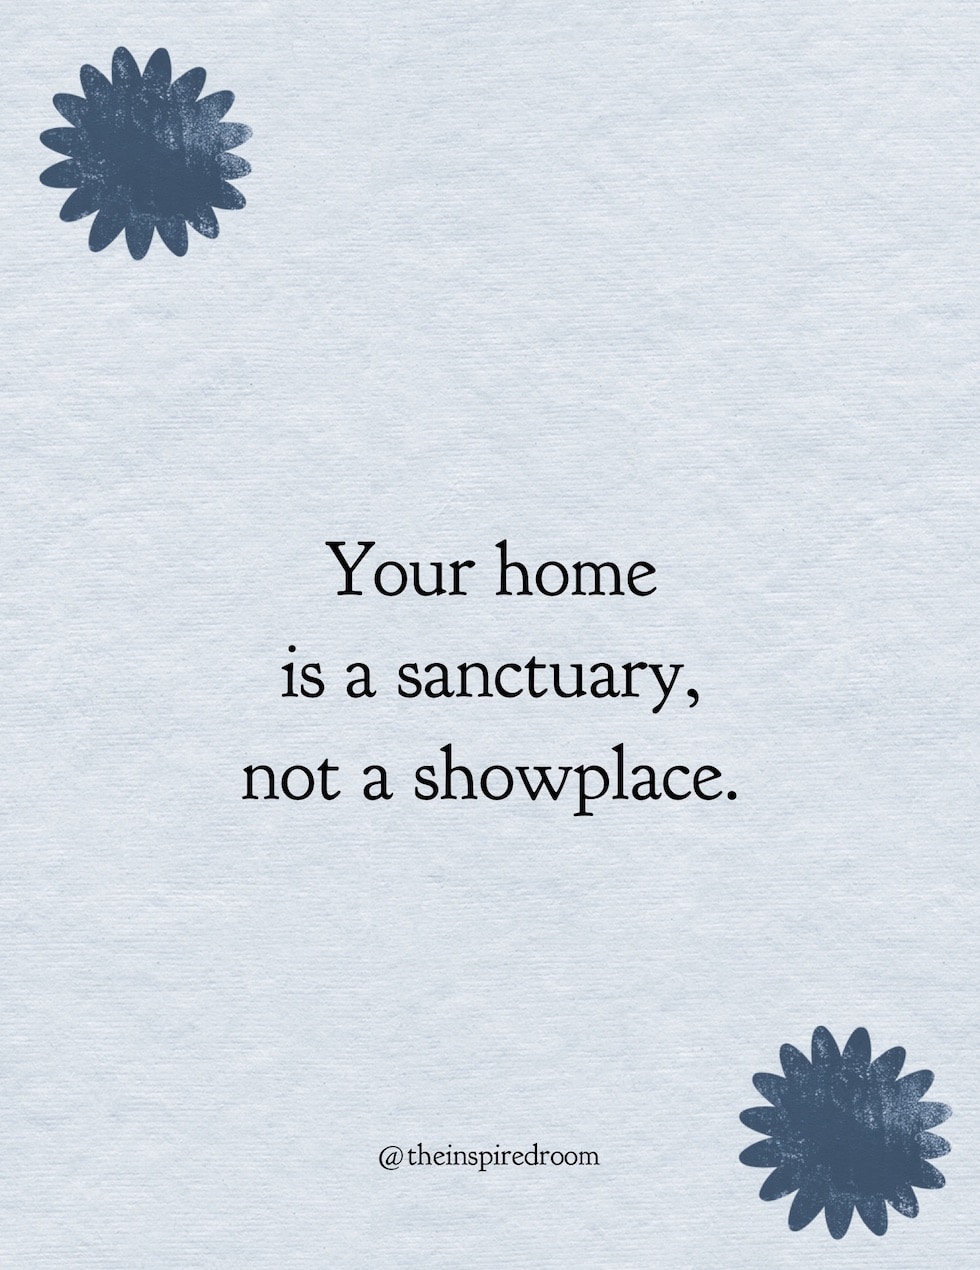 A Home Isn't A Showplace, It's a Sanctuary